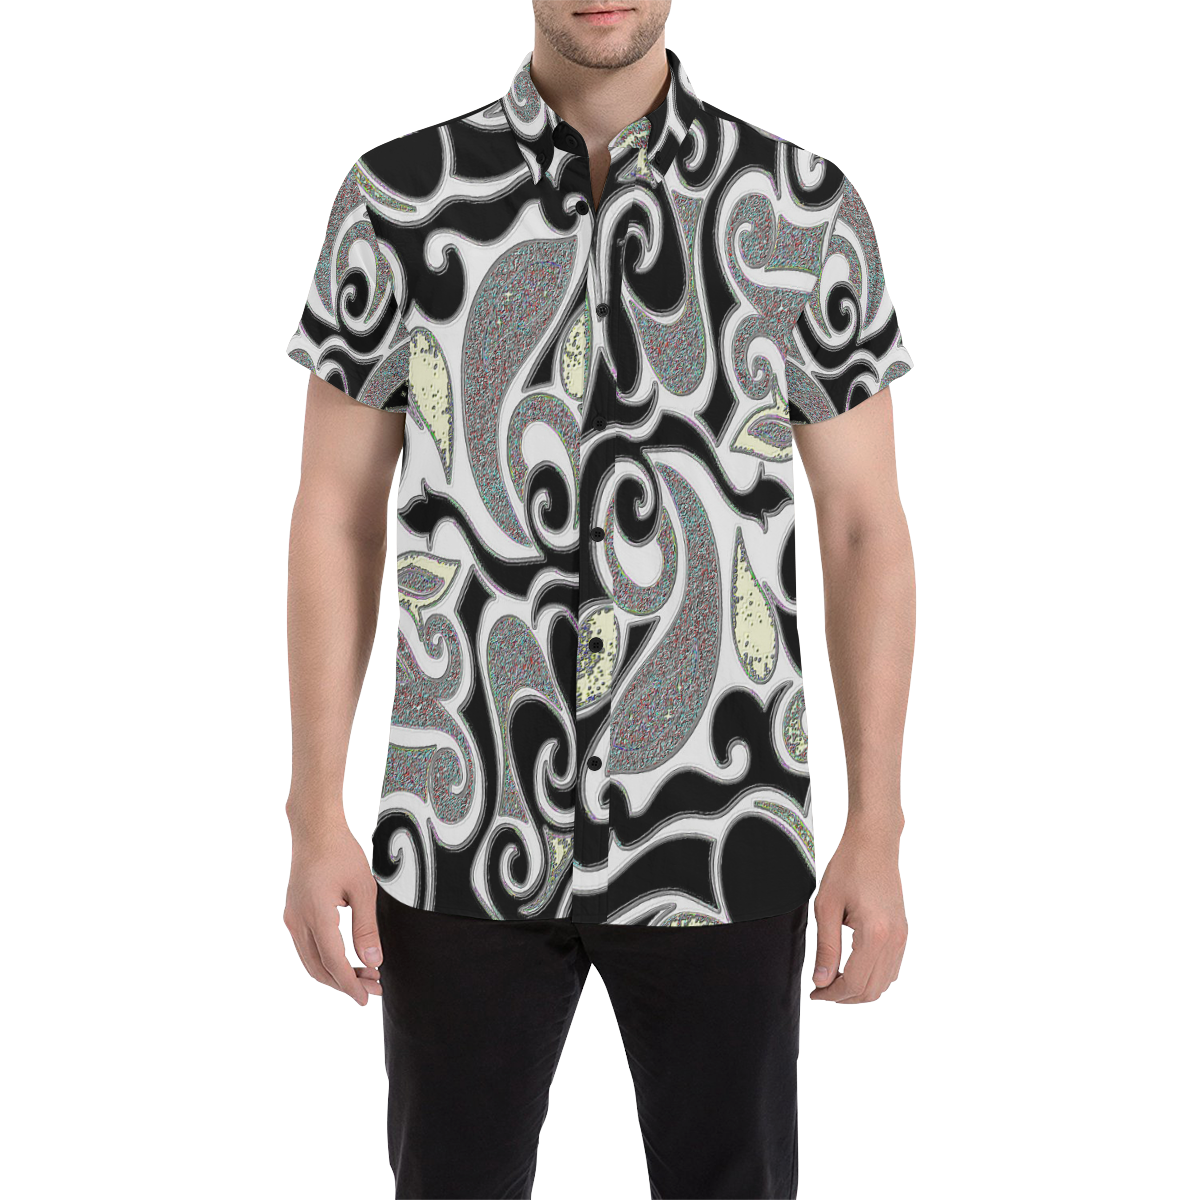 Black and White retro swirl Men's All Over Print Short Sleeve Shirt (Model T53)